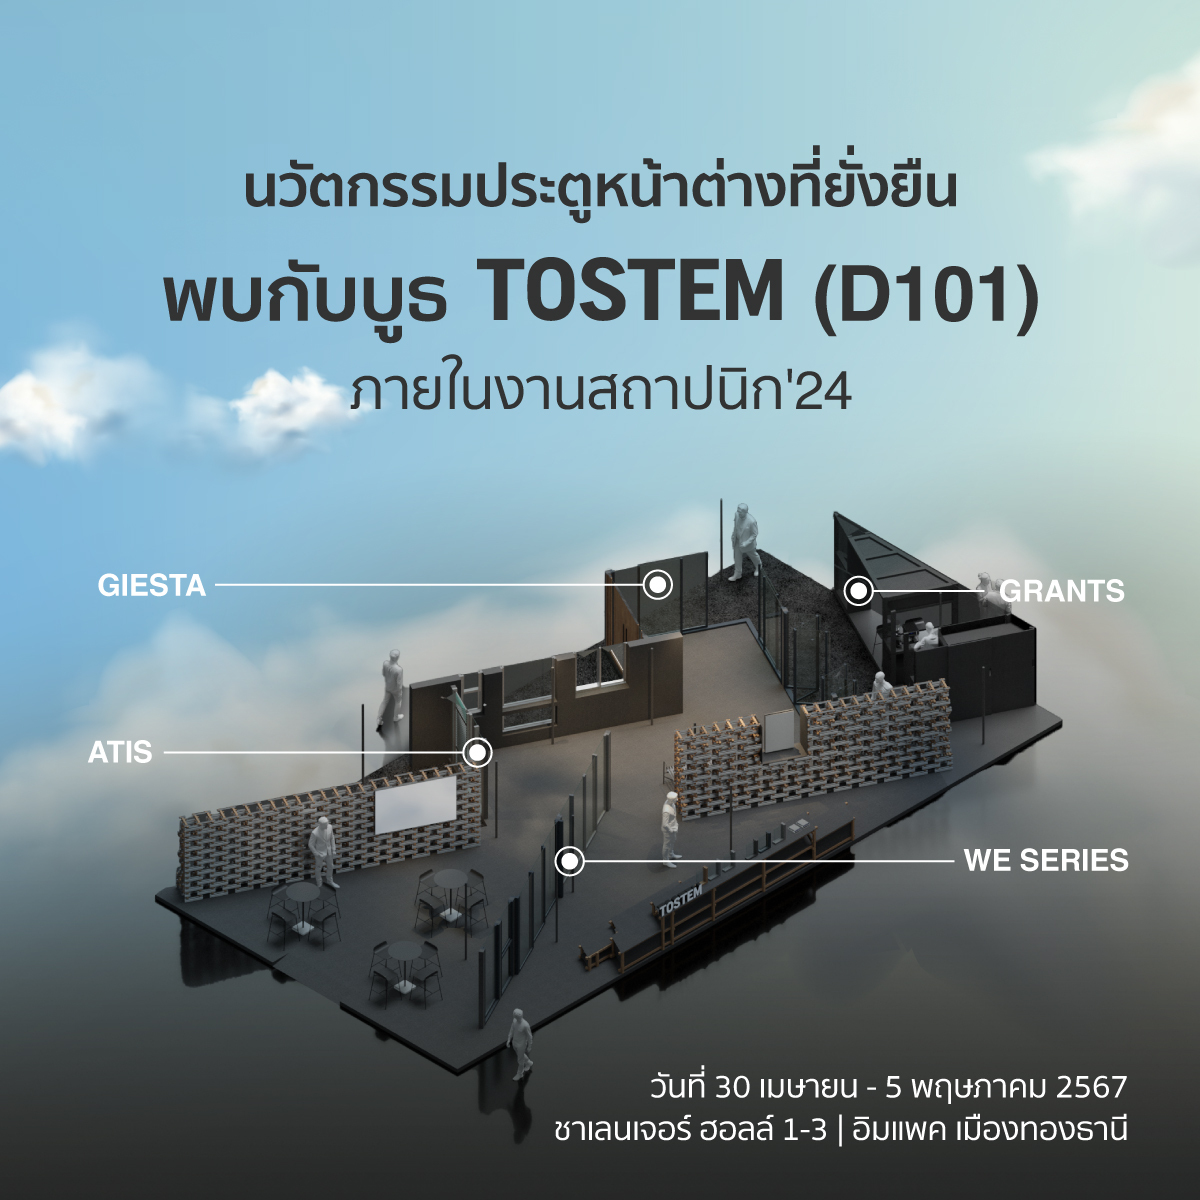 tostem ก้าวสู่ 101 ปี เปิดตัวนวัตกรรมอะลูมิเนียมรักษ์สิ่งแวดล้อม ‘premial r100’ ในงานสถาปนิก’67